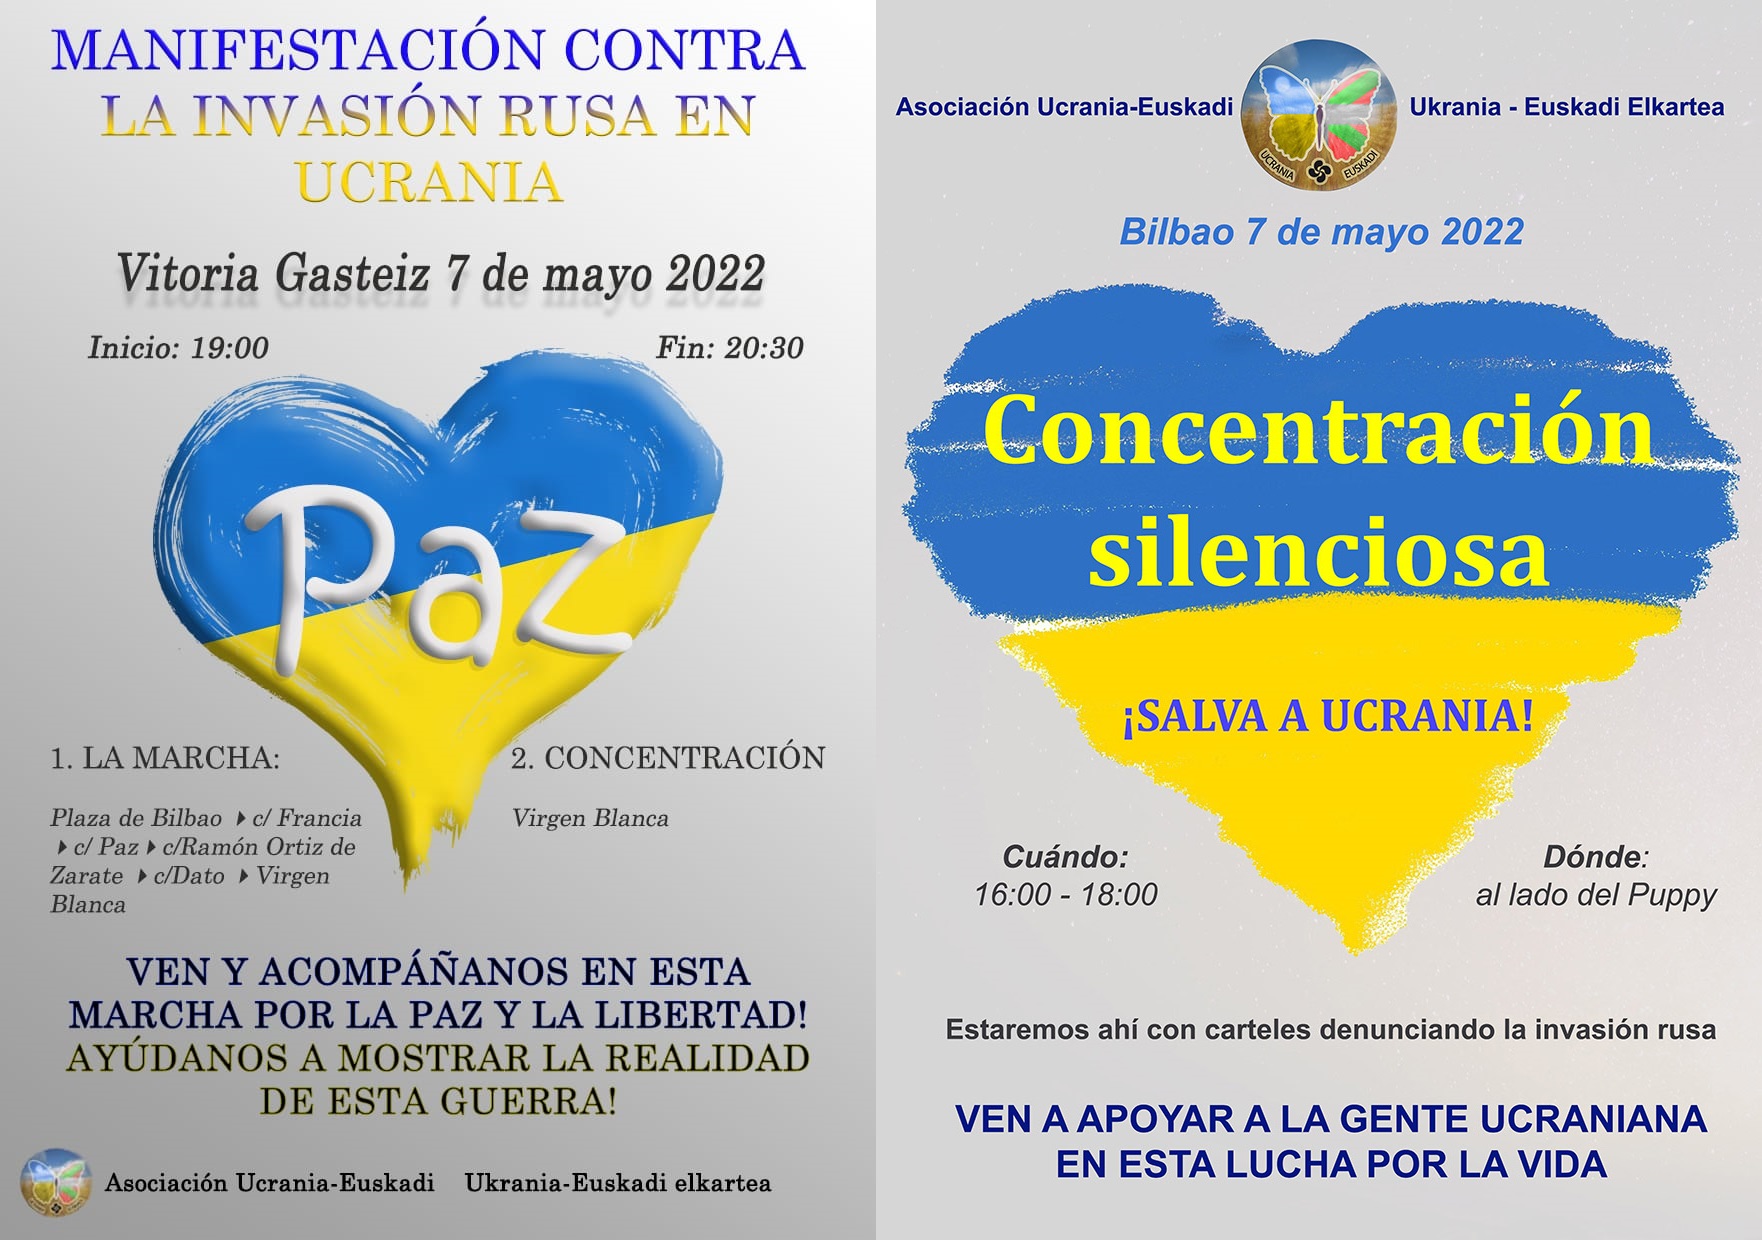 Dos carteles que informan sobre las manigestaciones el 7 de mayo de 2022 en Vitoria y Bilbao en apoyo a Ucrania